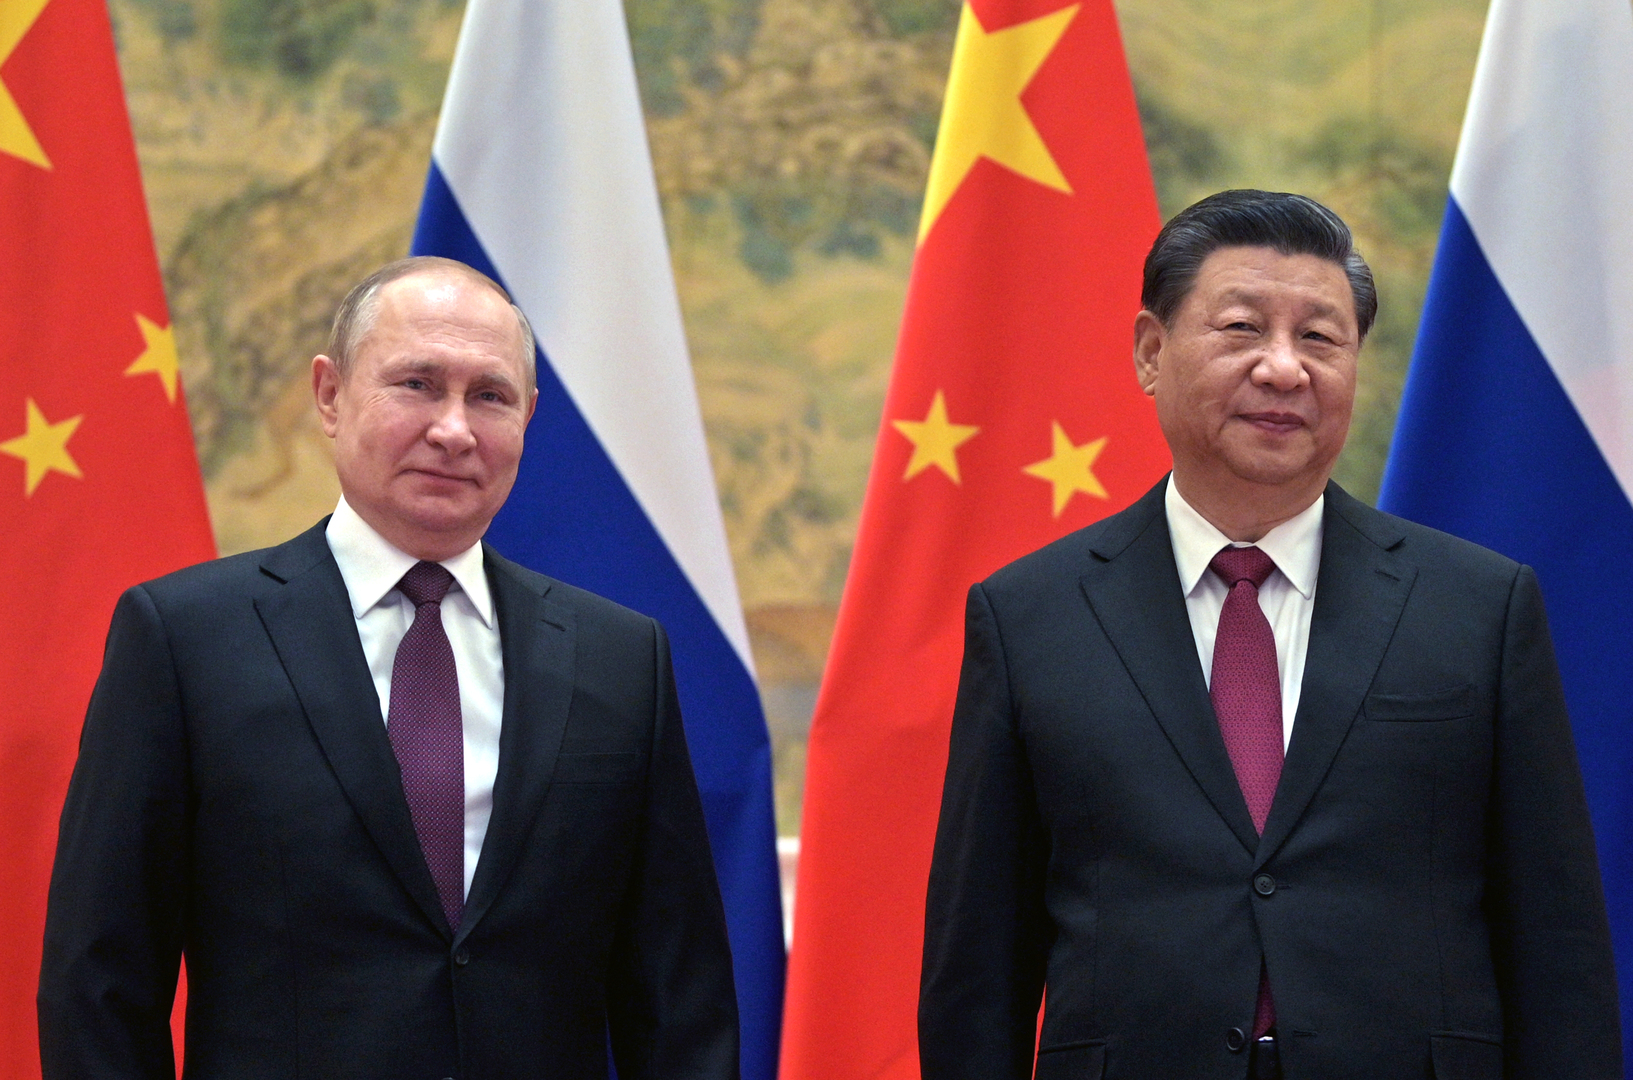 دعم مبادرة الضمانات الأمنية ونداء للقوى النووية..  الشق الأمني للإعلان الروسي-الصيني المشترك